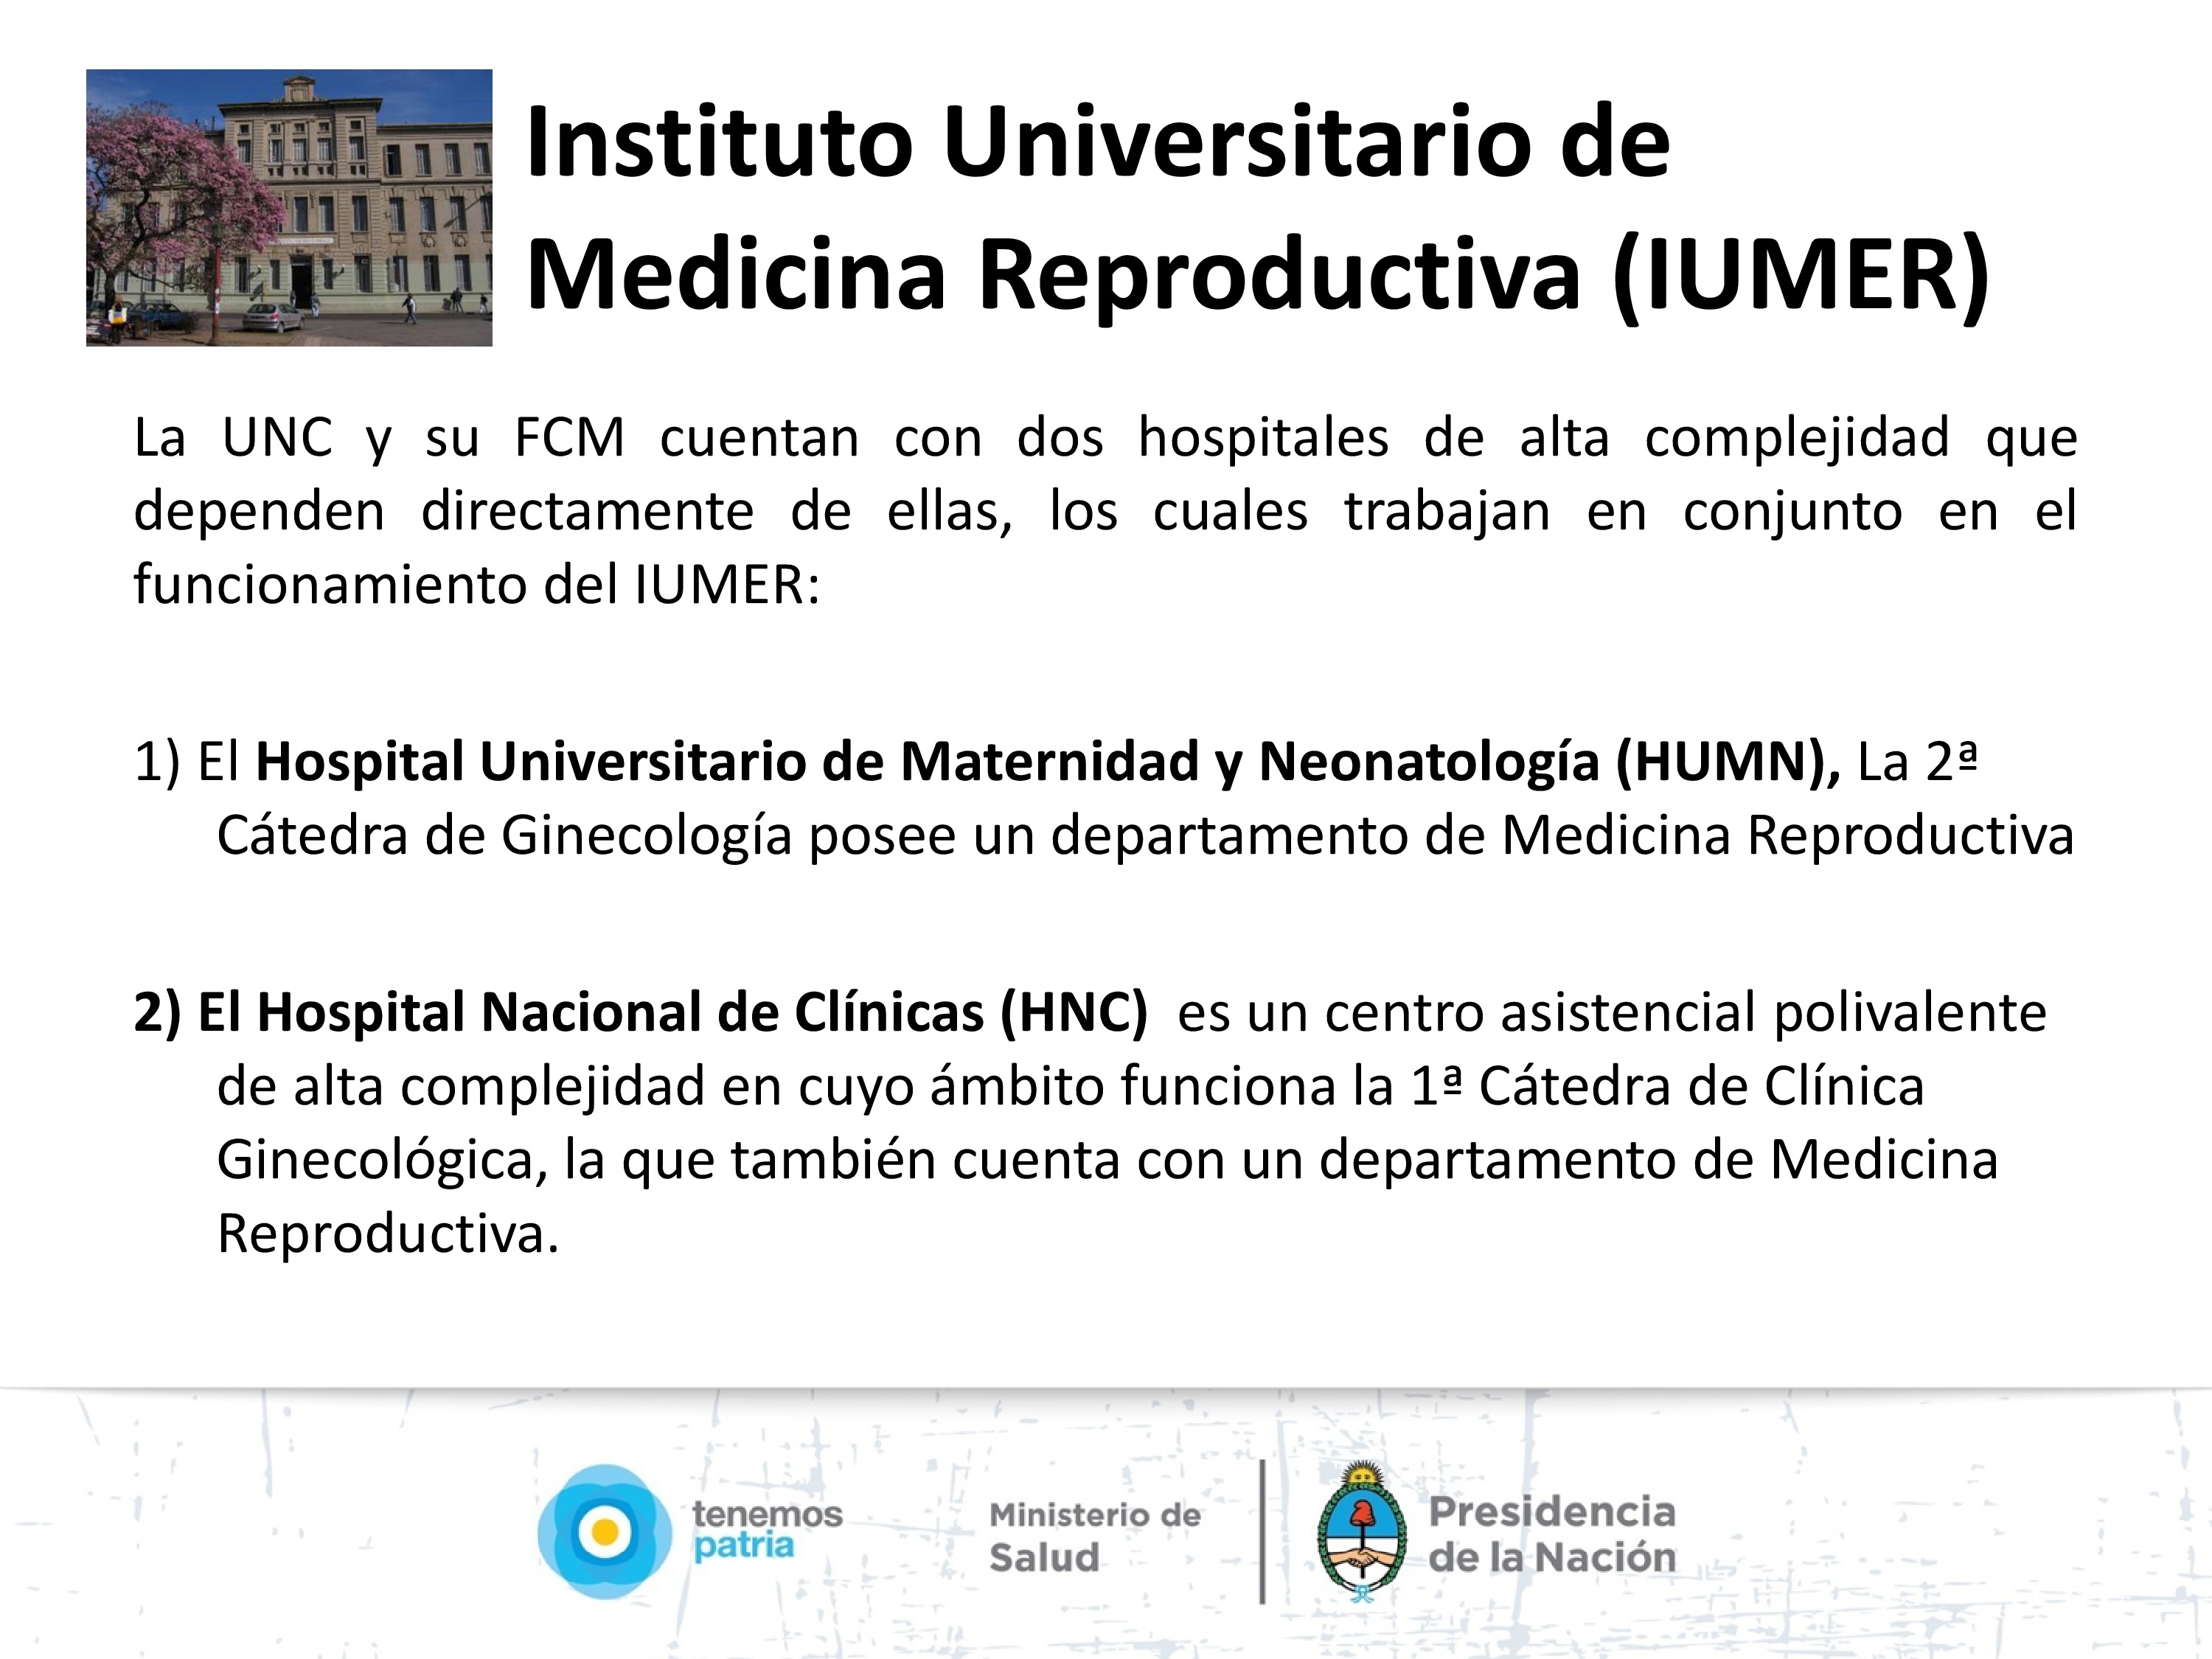 Instituto Universitario de Medicina Reproductiva, Córdoba.